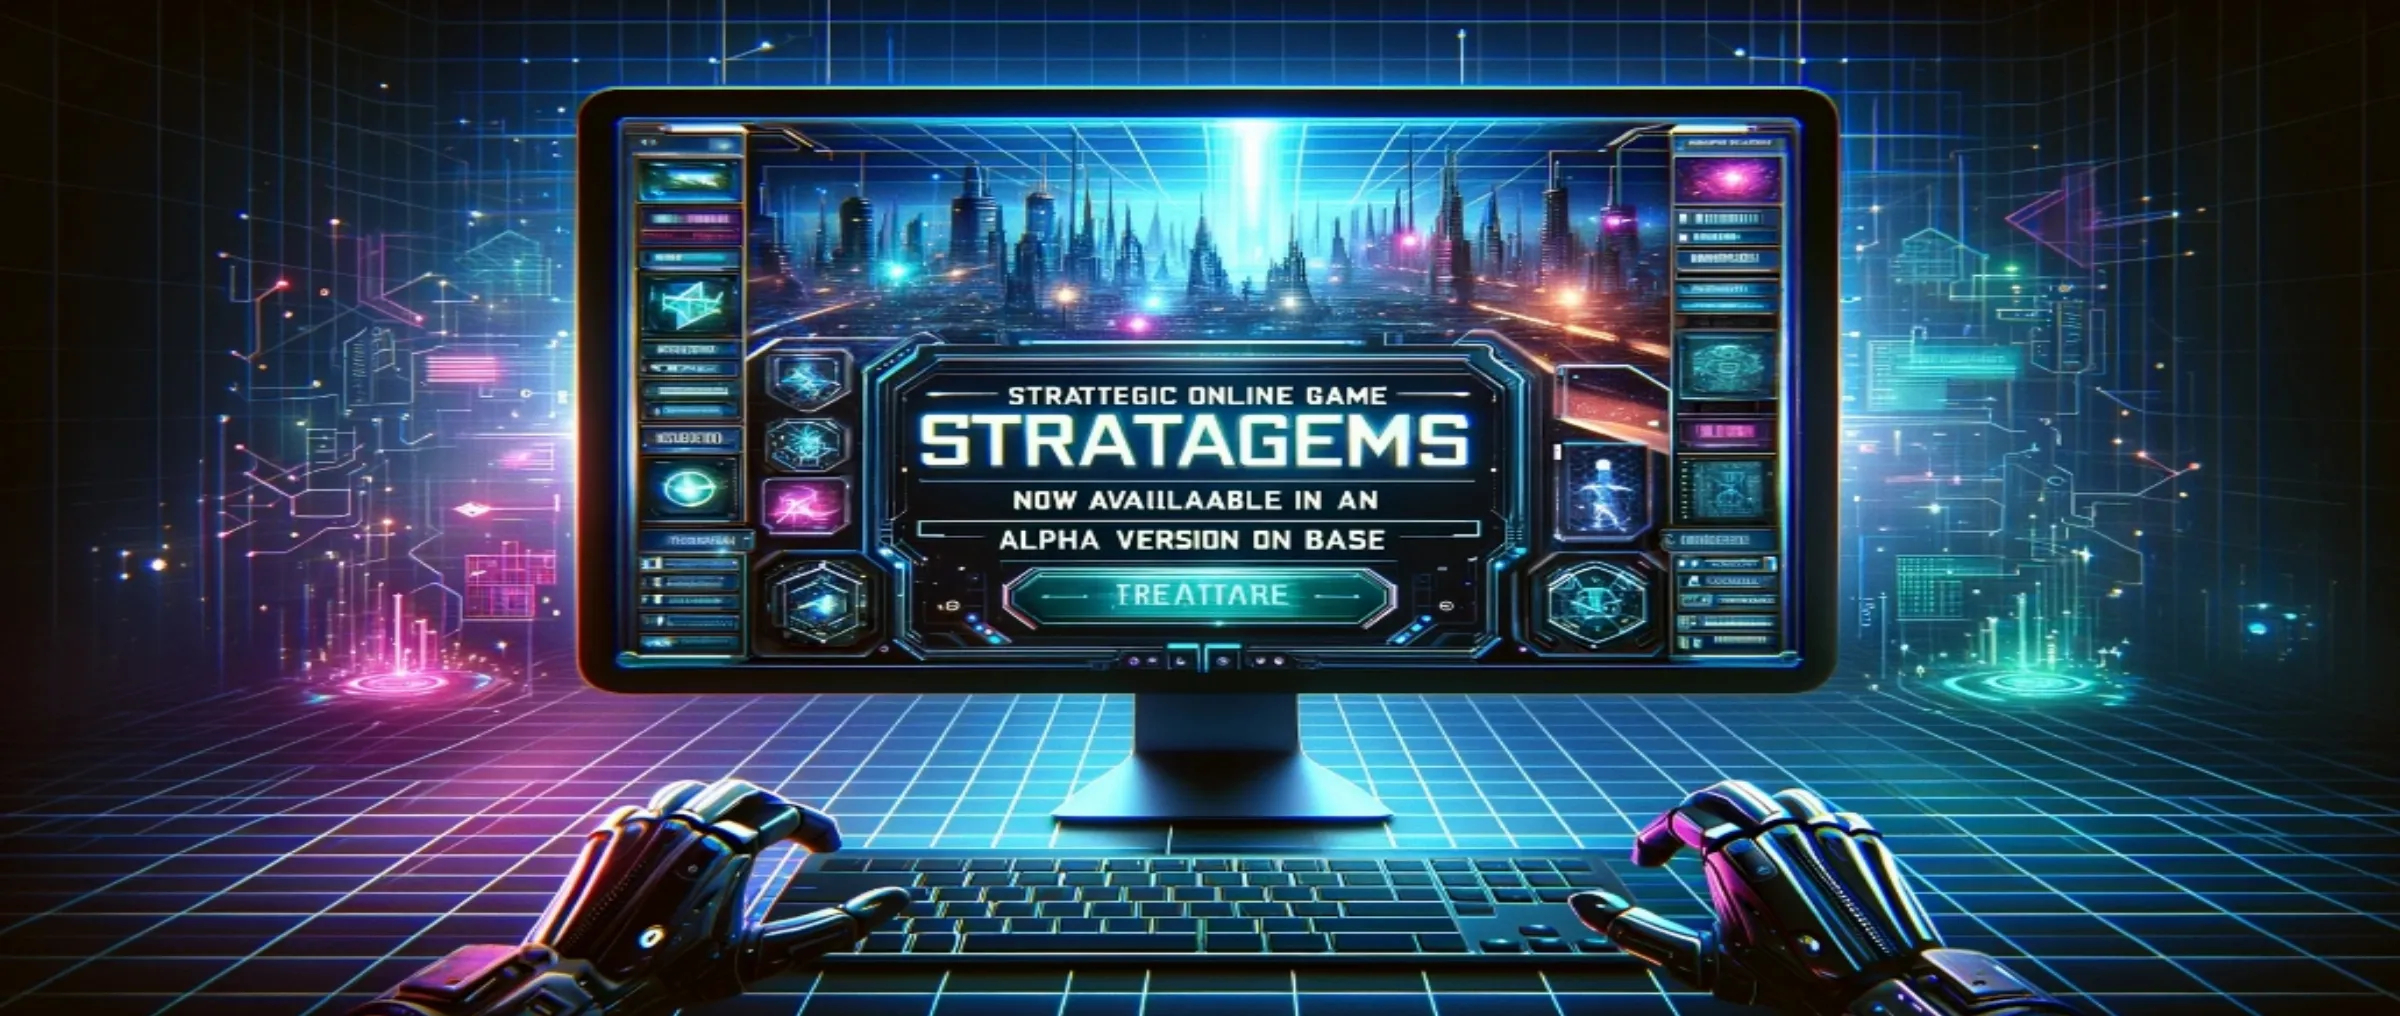 Стратегическая онлайн-игра Stratagems теперь доступна в альфа-версии на Base